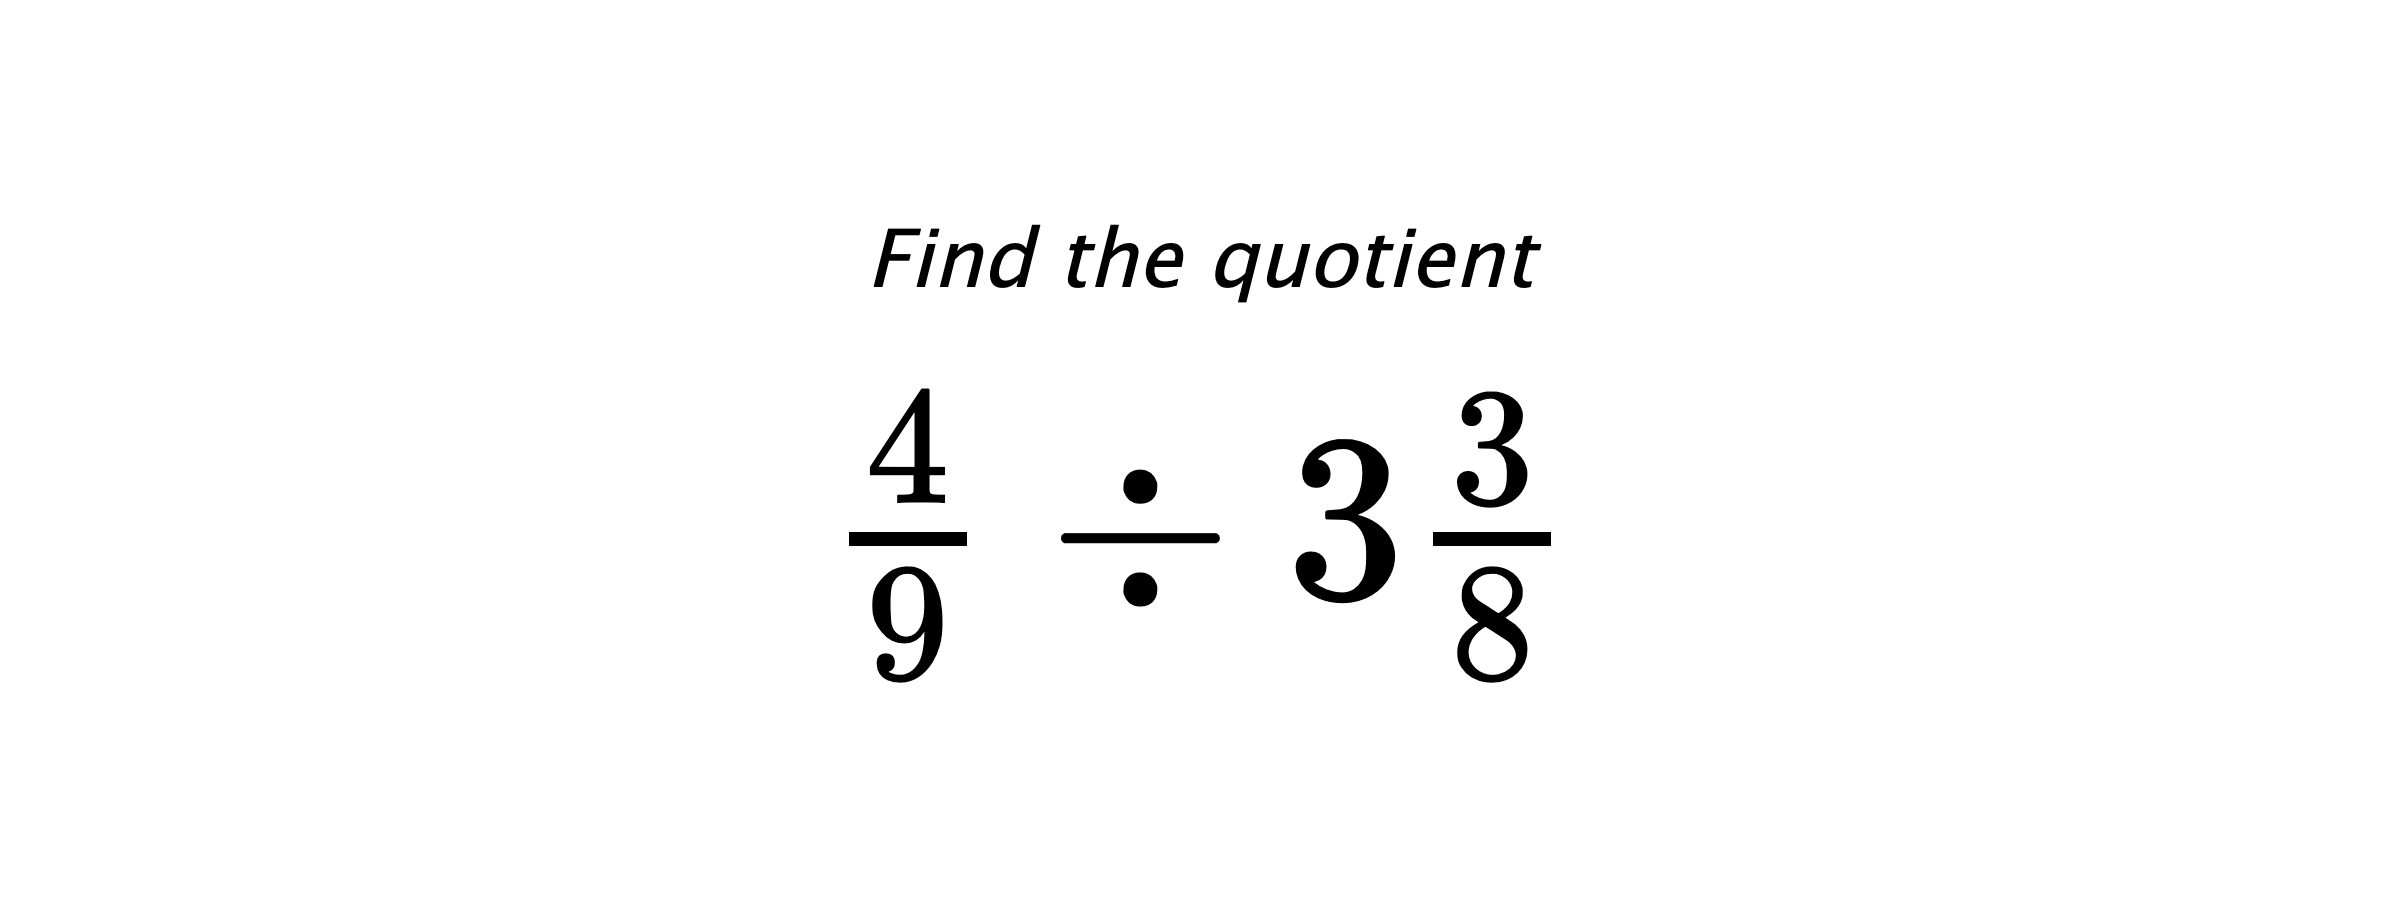 Find the quotient $ \frac{4}{9} \div 3\frac{3}{8} $